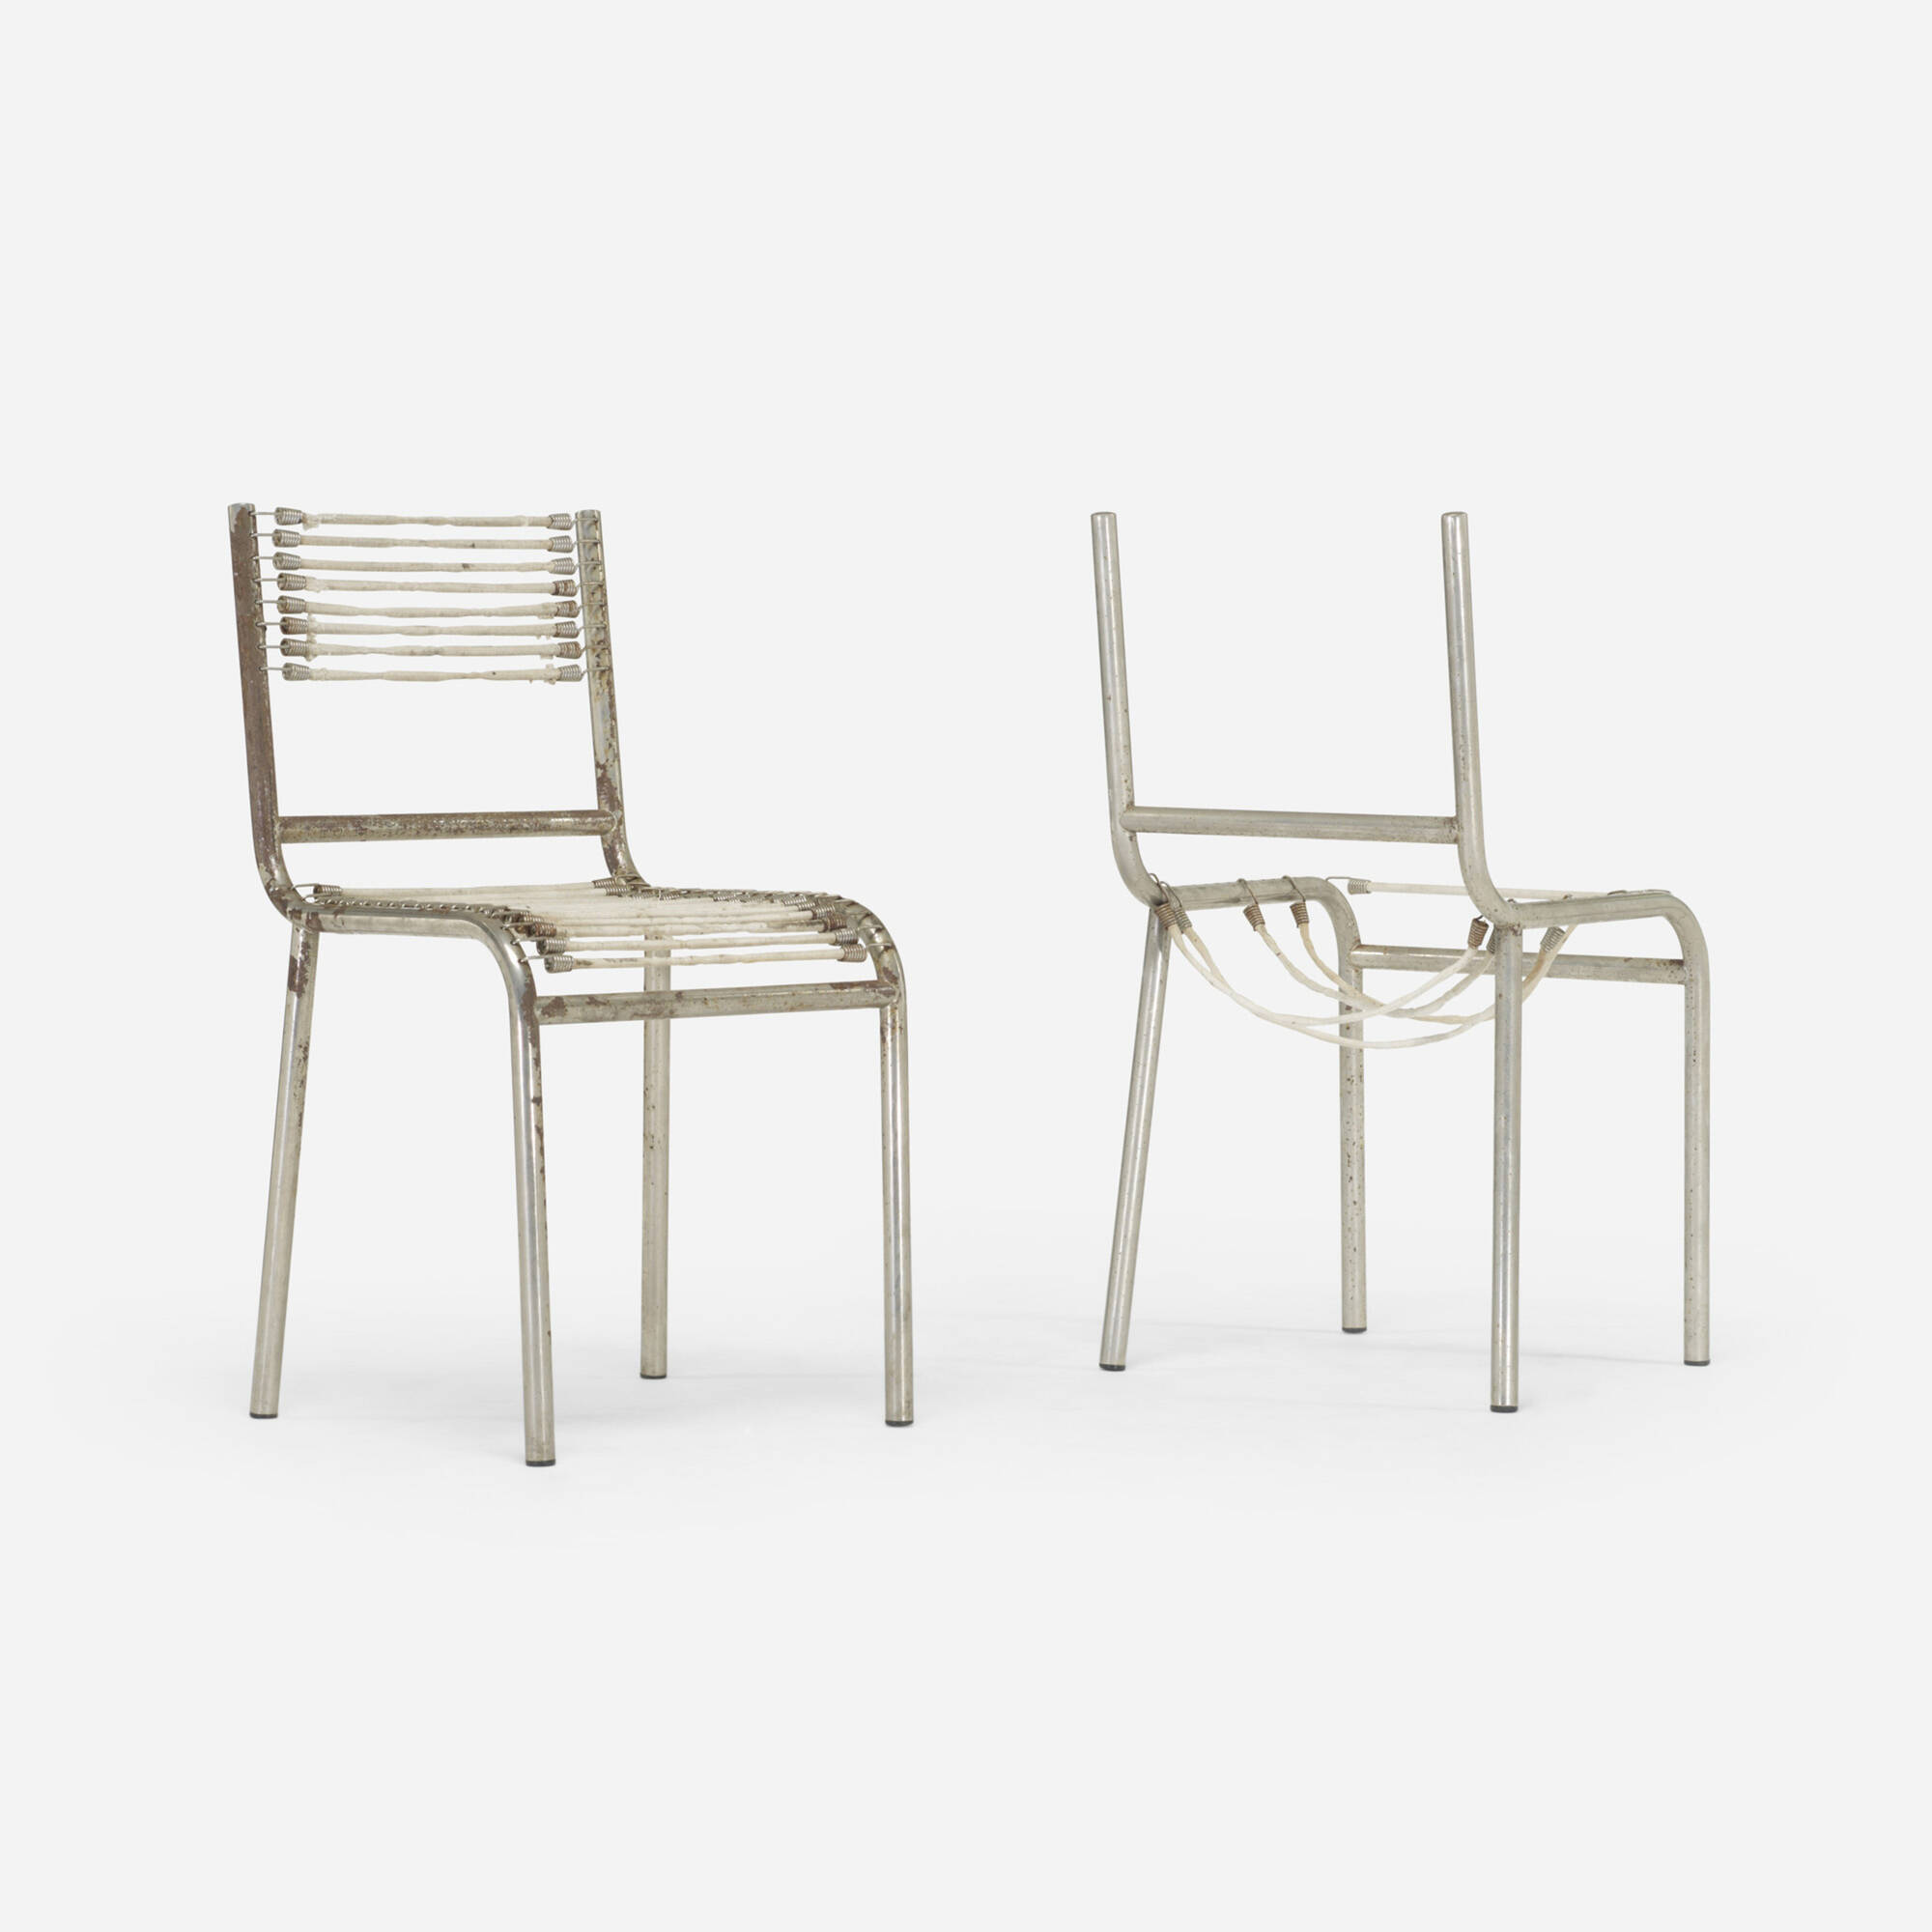 301: RENÉ HERBST, Sandows chairs, pair